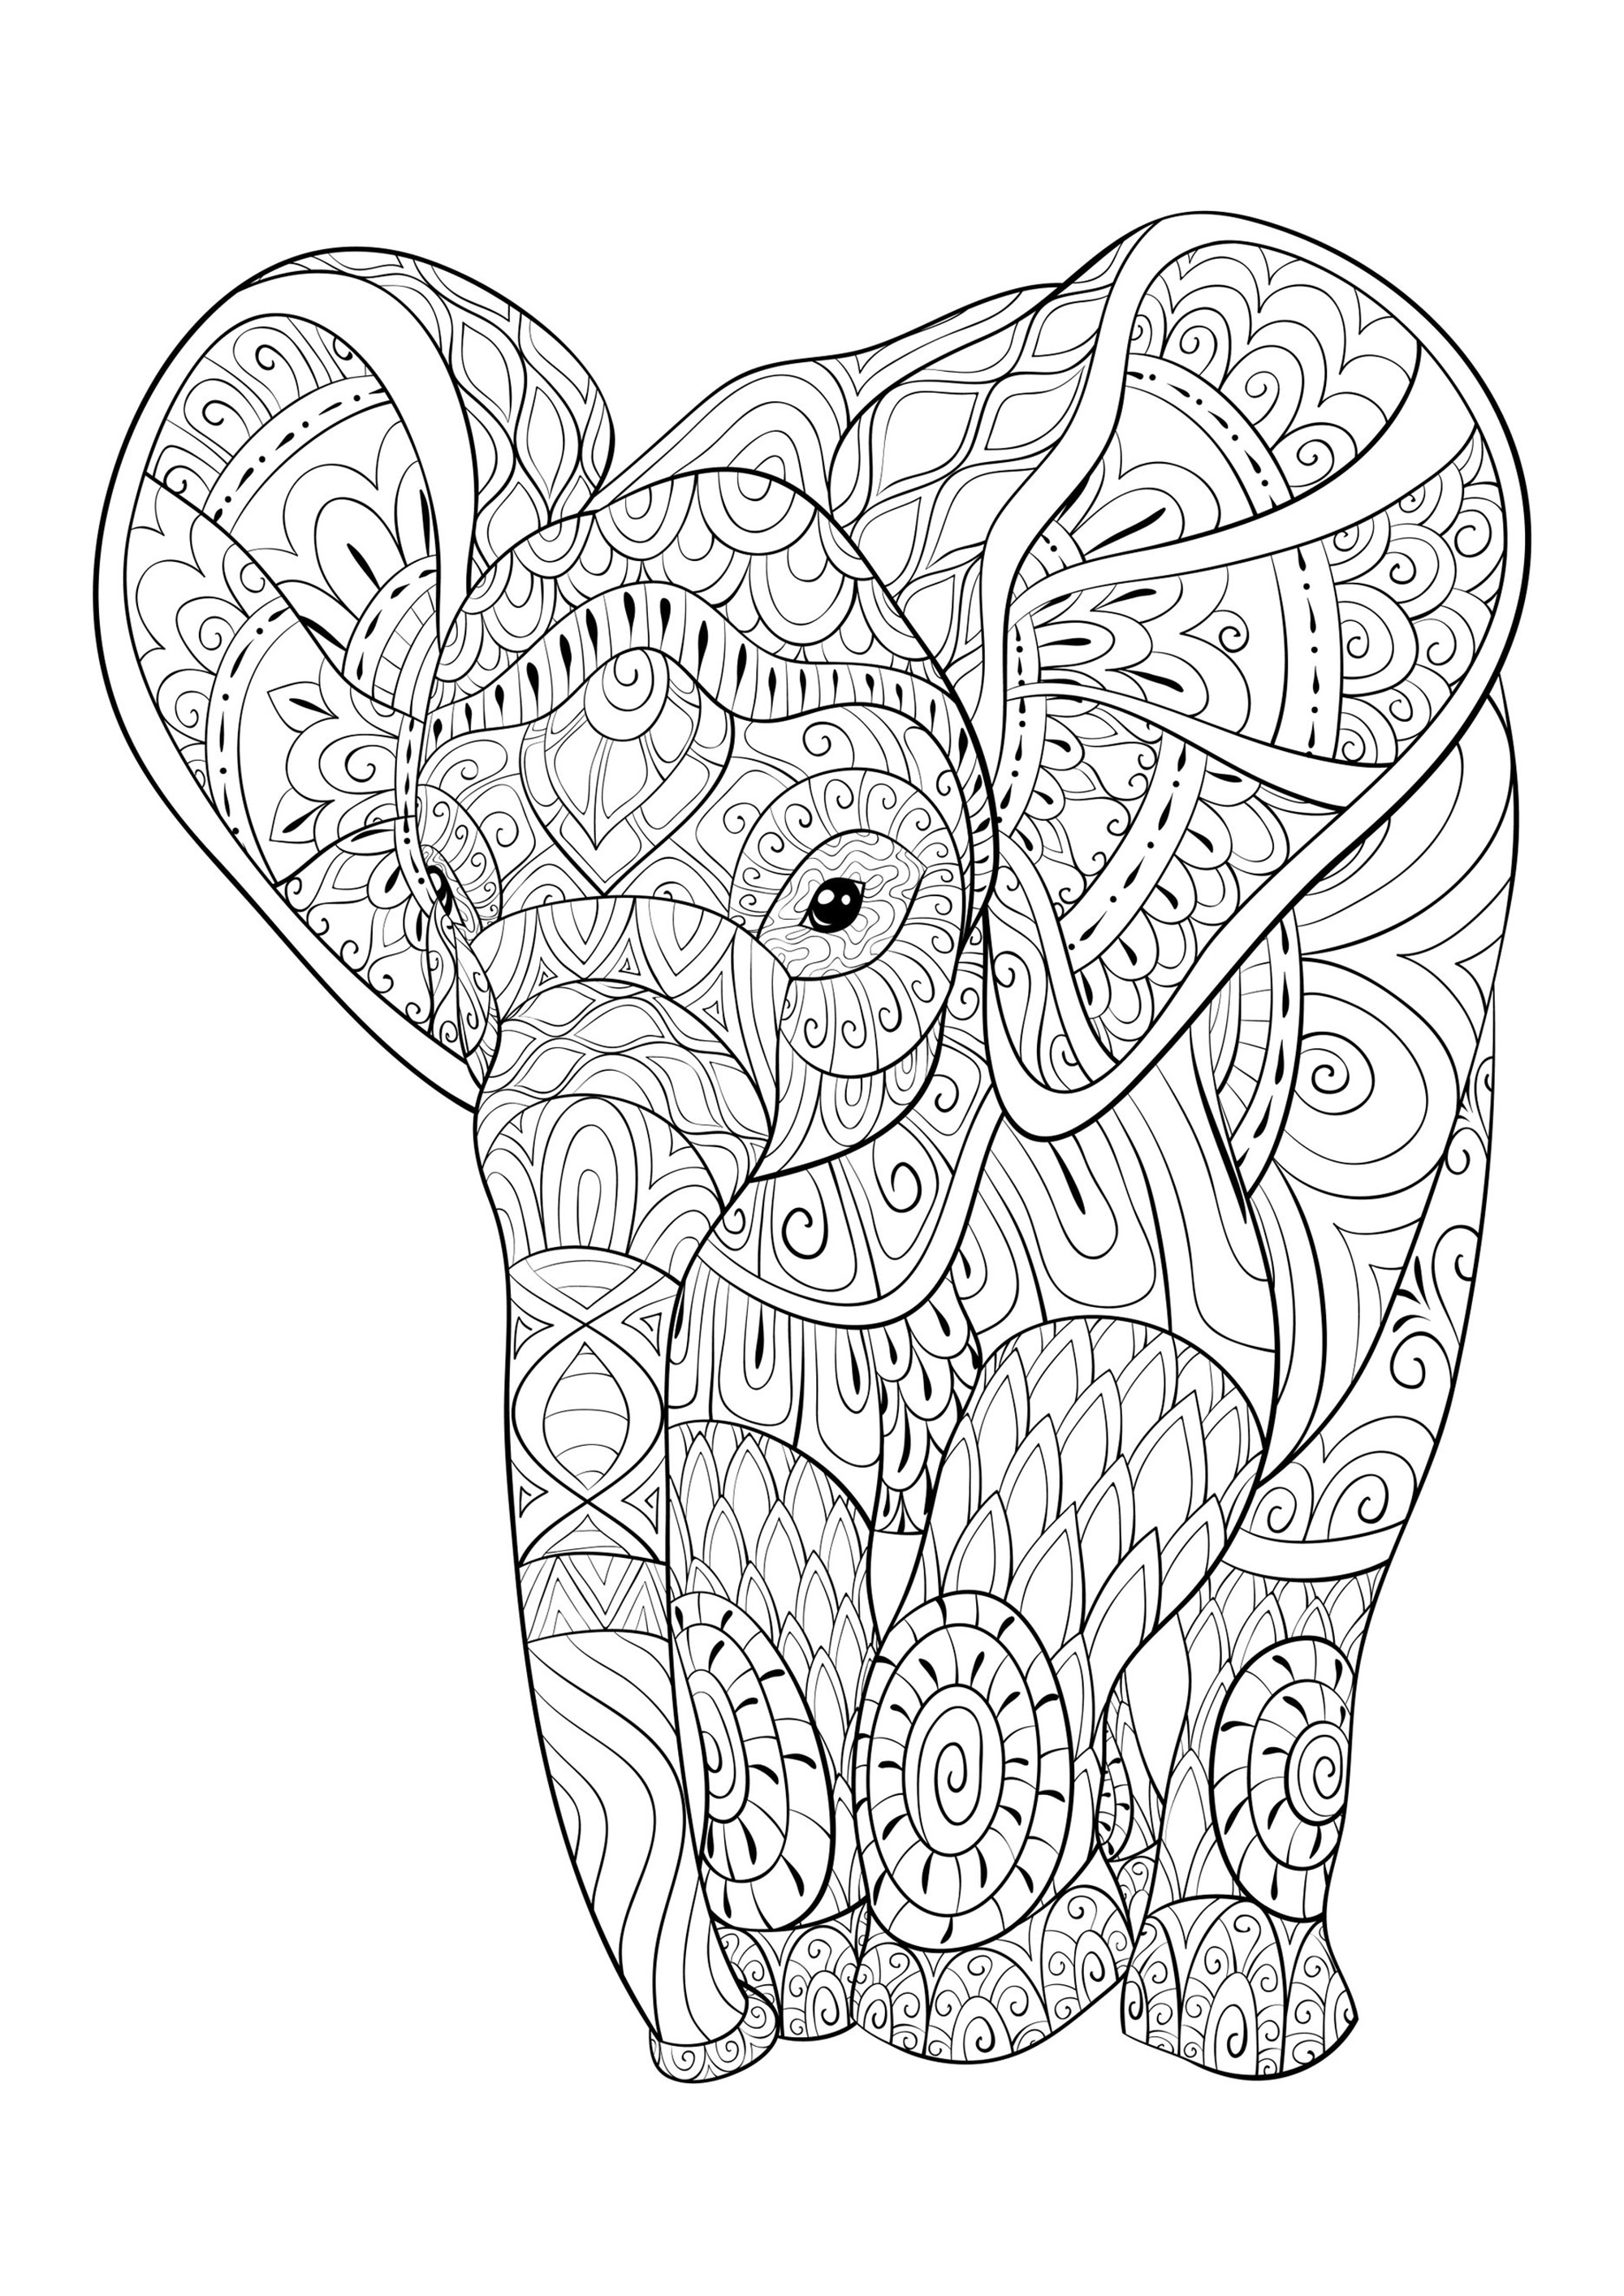 Jeune éléphant avec jolis motifs à colorier, Artiste : Nonuzza   Source : 123rf